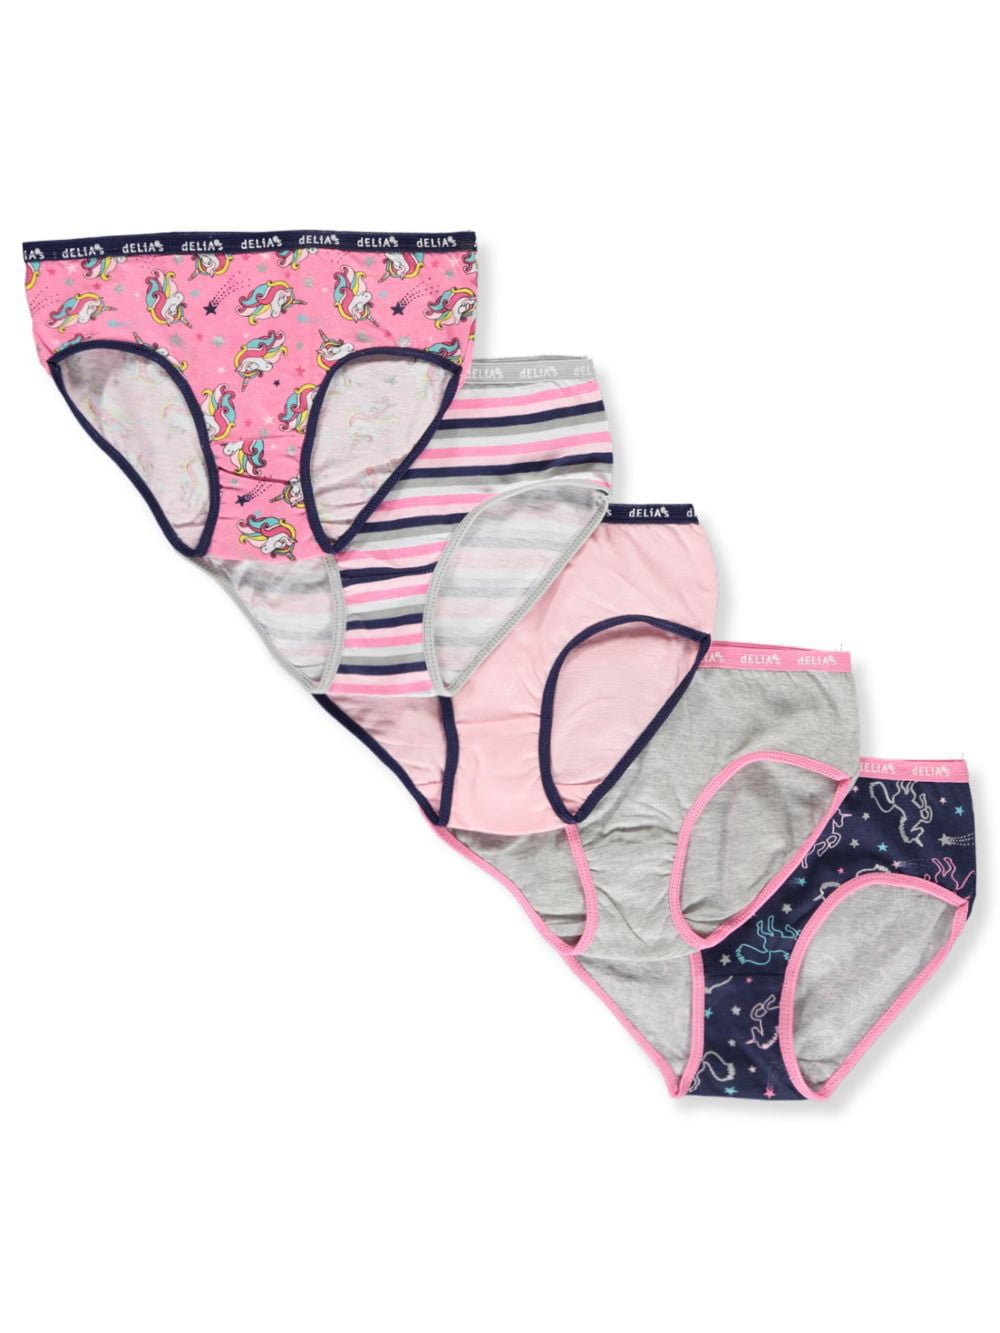 10 Pack dELiAs Girls Cotton Bikini Underwear Panties 